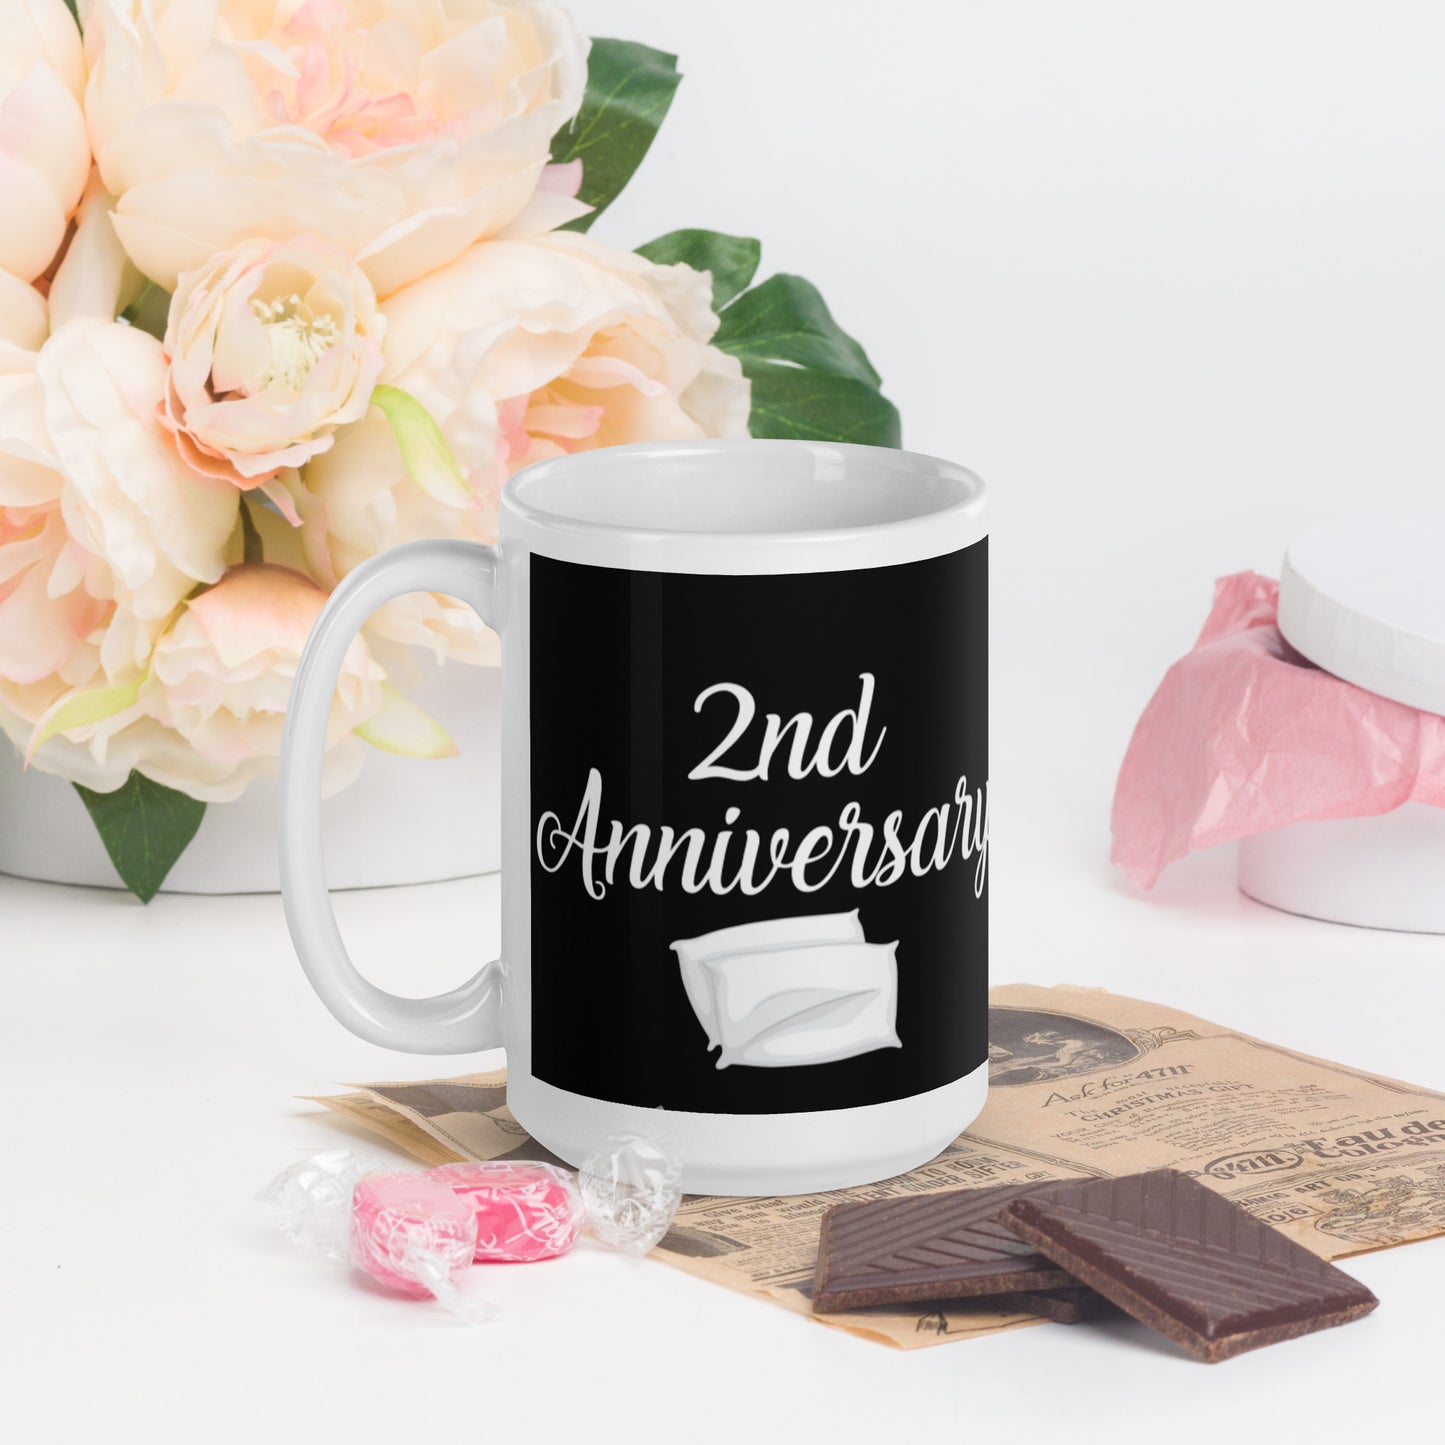 2nd Anniversary White glossy mug